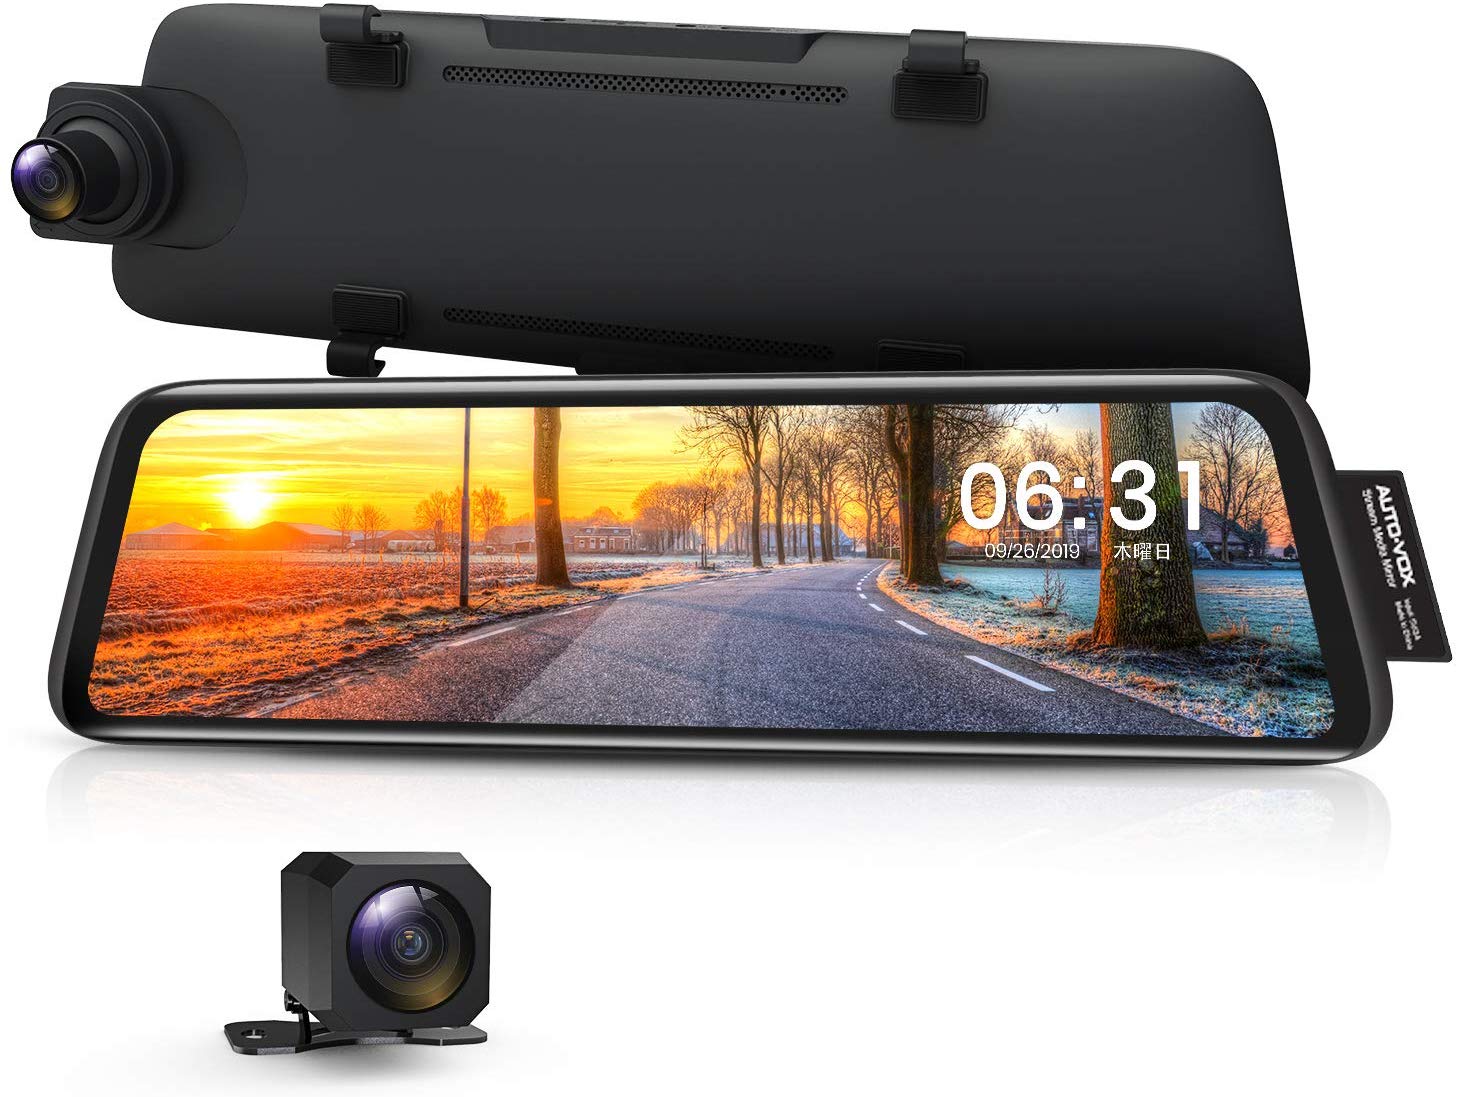 ドライブレコーダー 前後カメラ 前後1080P 右ハンドル仕様 ノイズ対策 デジタルインナーミラー 駐車監視 GPS タッチパネル 2分割画面 2重映像対策 光の反射対策 Sonyセンサー AUTO-VOX V5